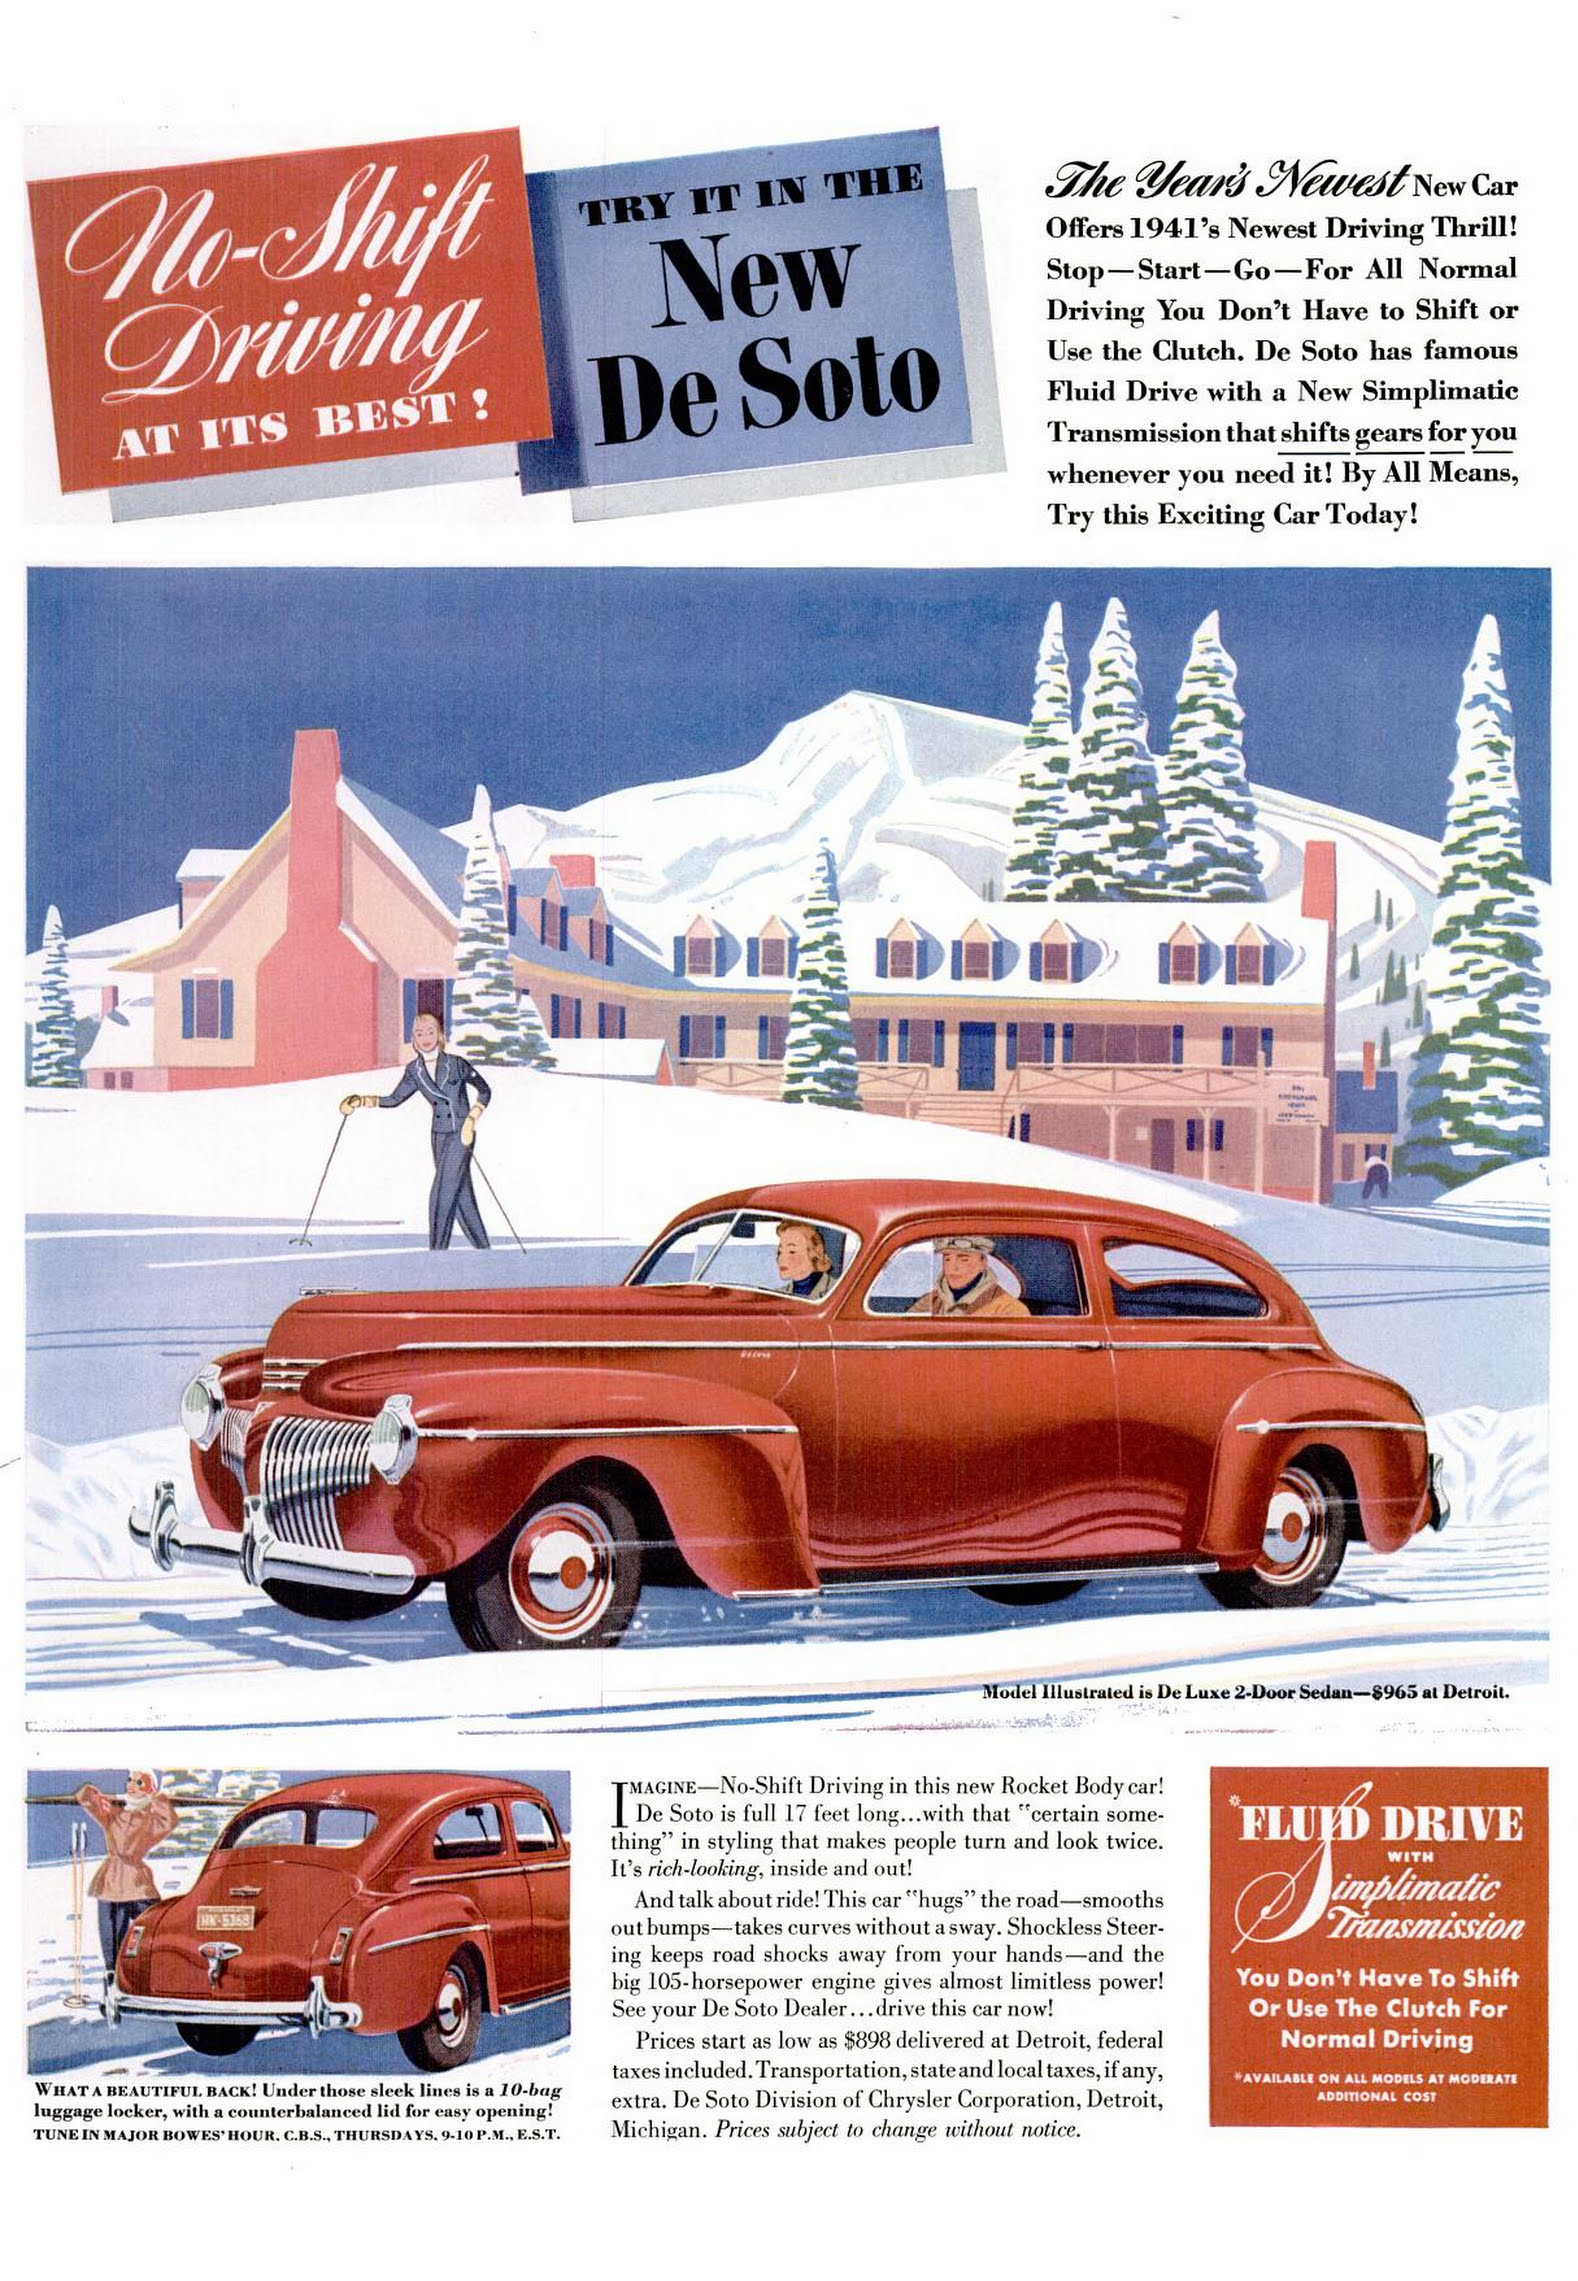 1941 De Soto De Luxe 2-Door Sedan - published in Life - February 24, 1941